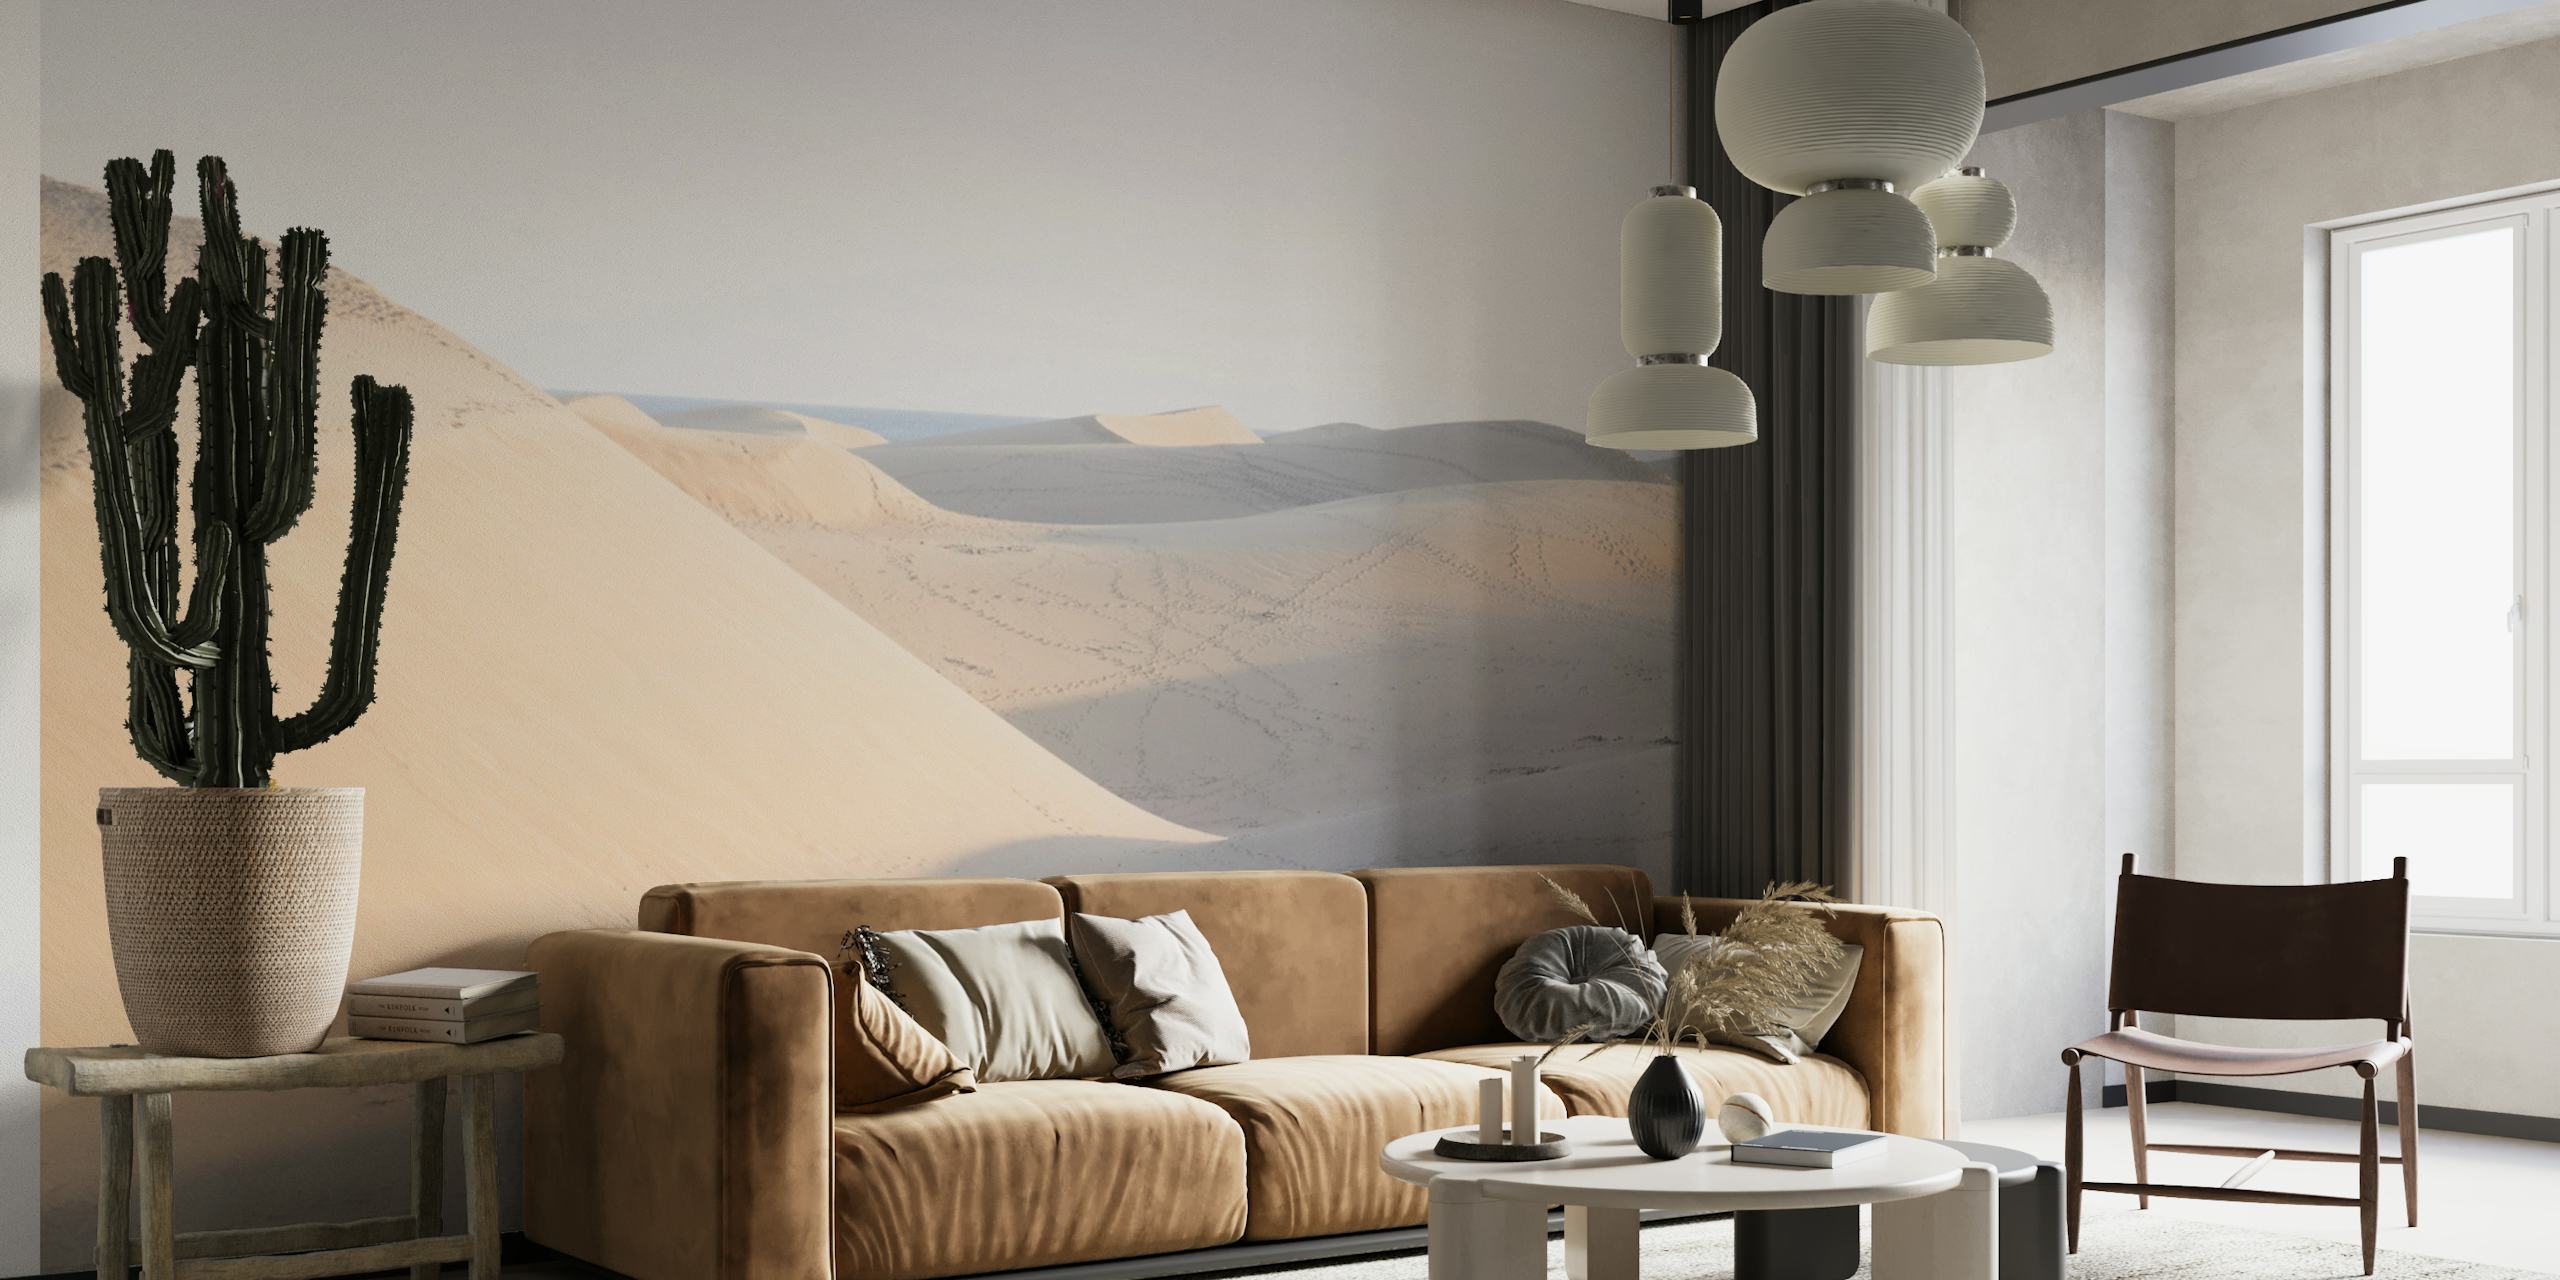 Mural de pared con una tranquila escena del desierto, con dunas suaves y sombras sutiles